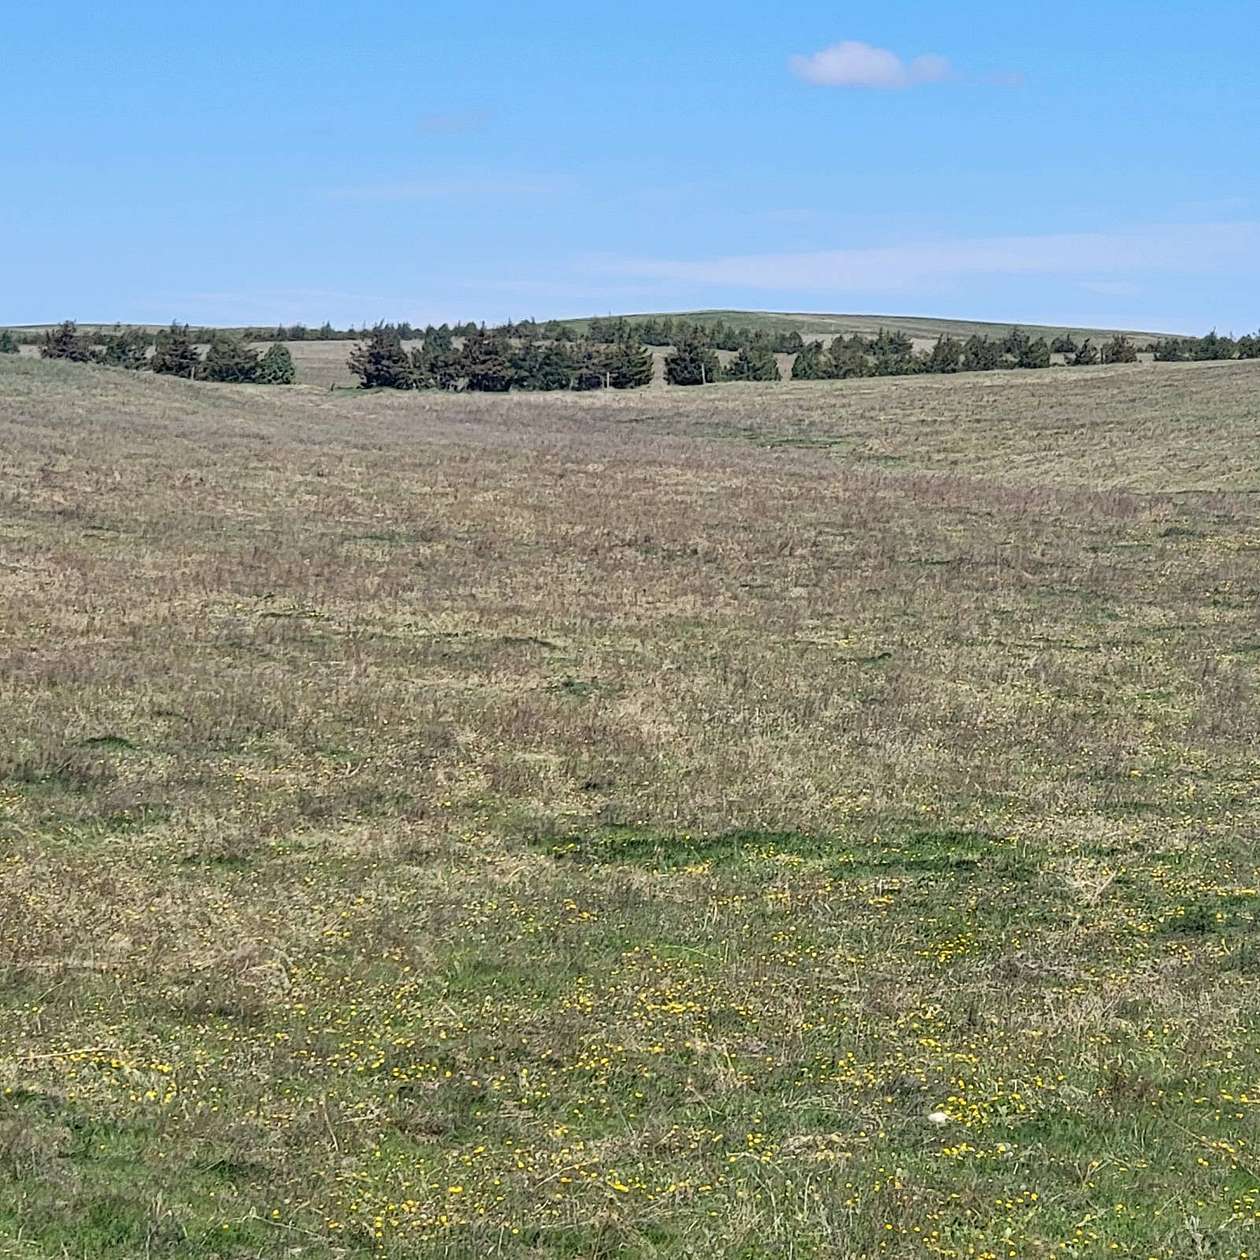 492 Acres of Recreational Land & Farm for Sale in Kimball, Nebraska